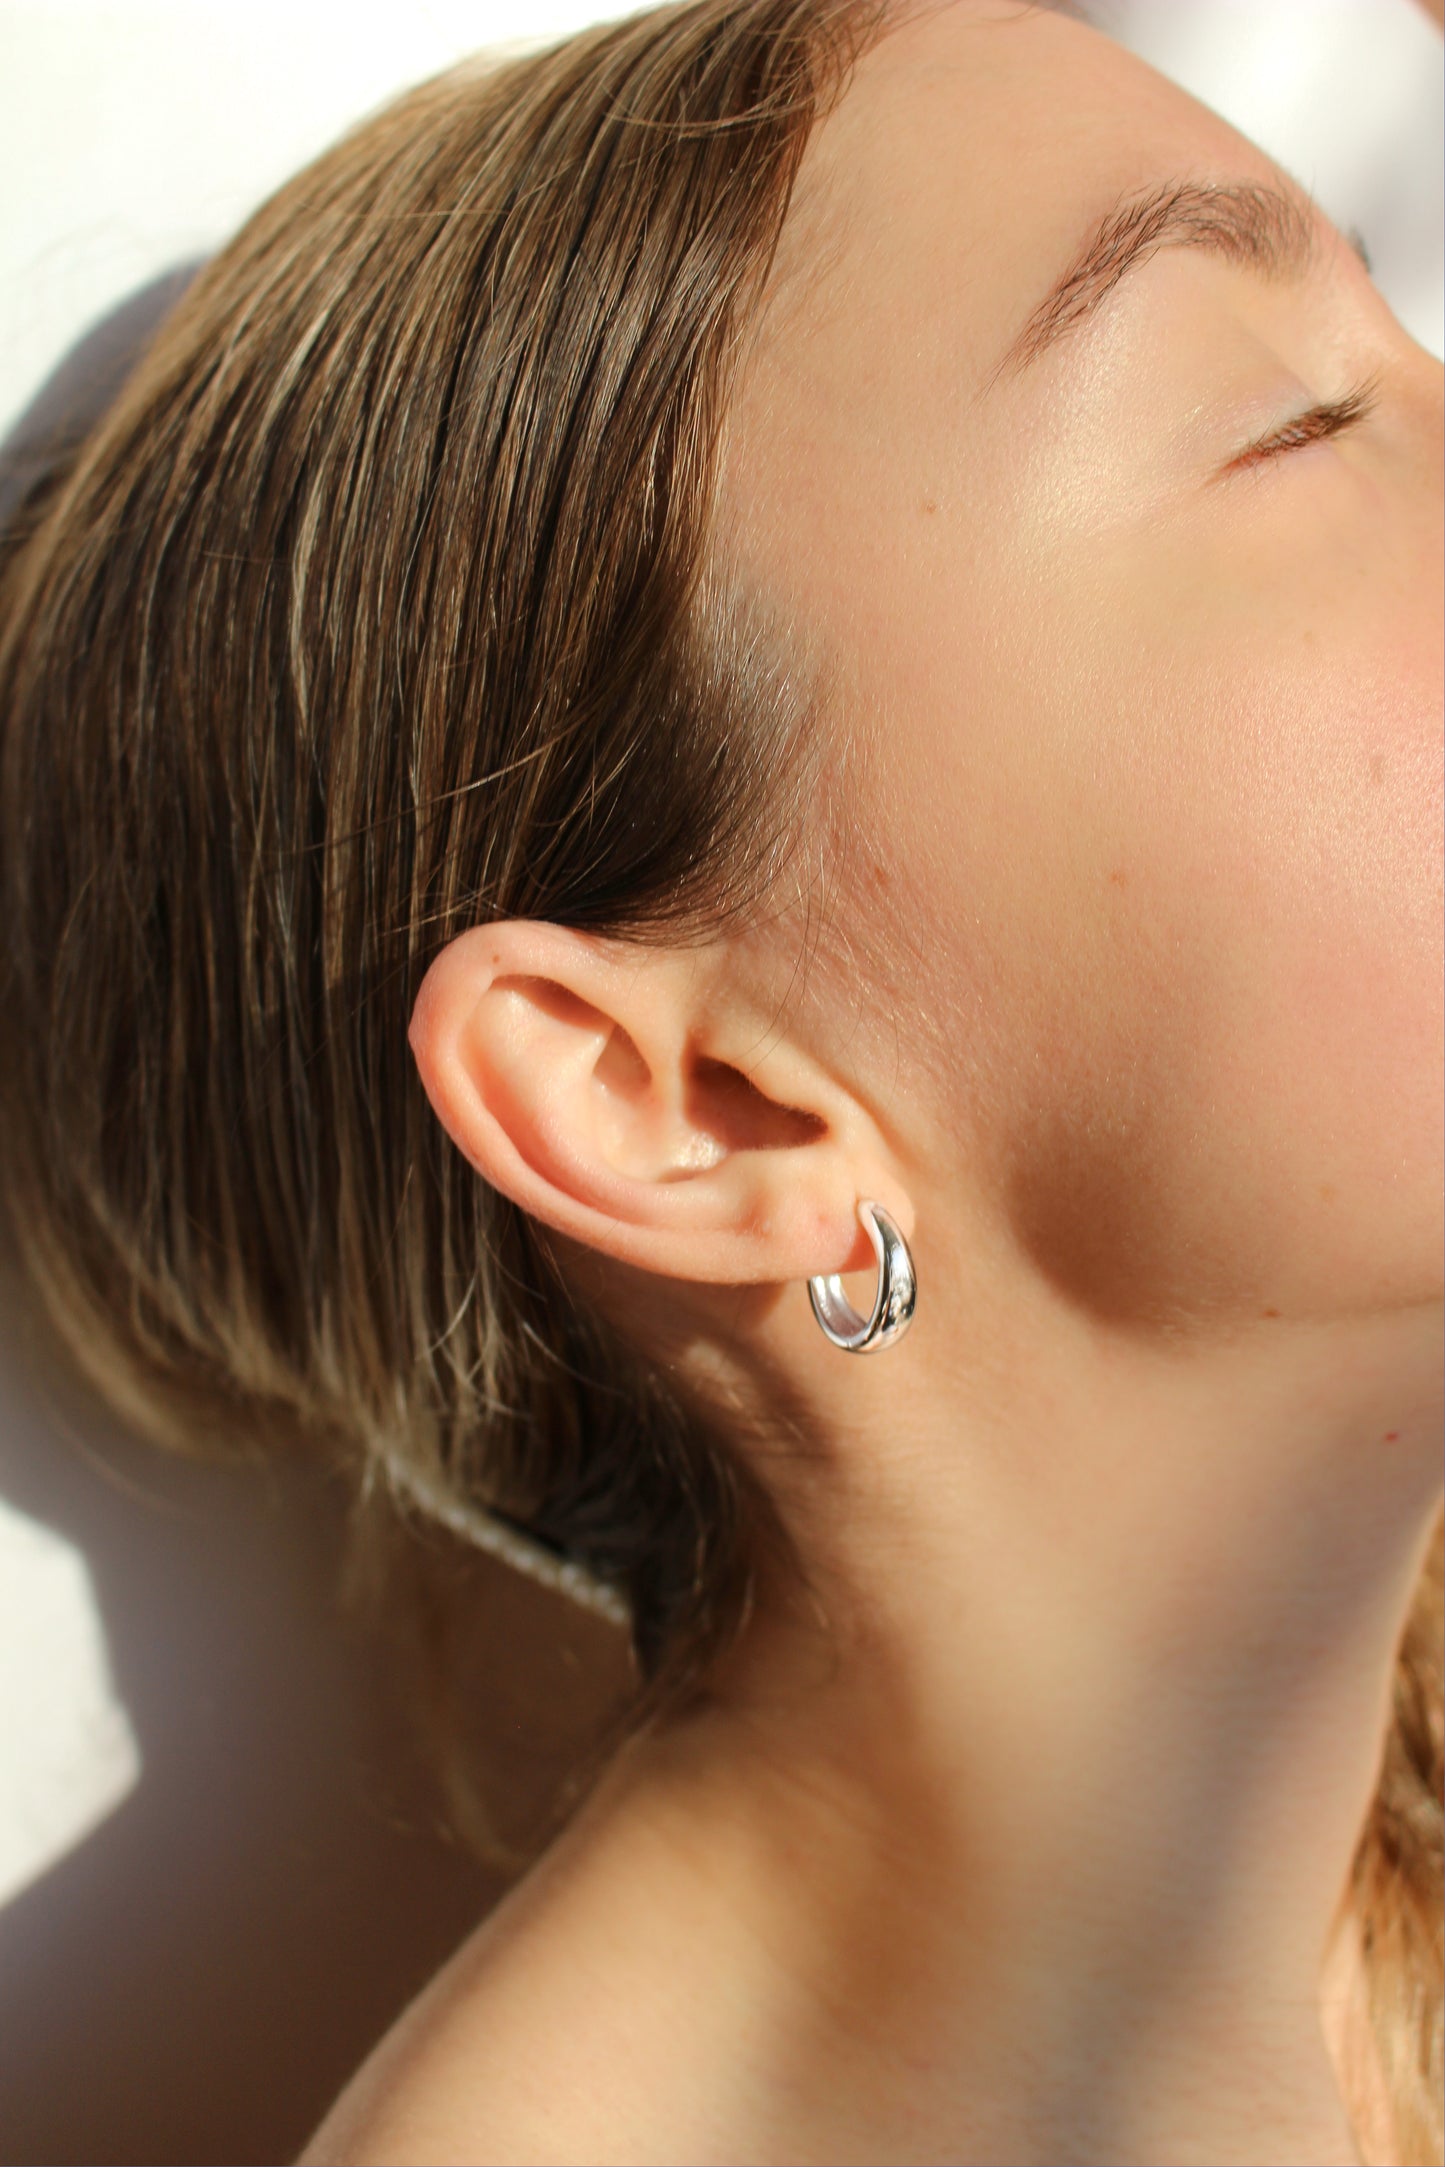 Sterling Silver Solid Vermeil Earrings ∙ Huggies Plain Hoop∙ 18mm ∙ Minimalist Simple Earrings ∙ Watersafe ∙ Recycled Silver ∙ Best Quality